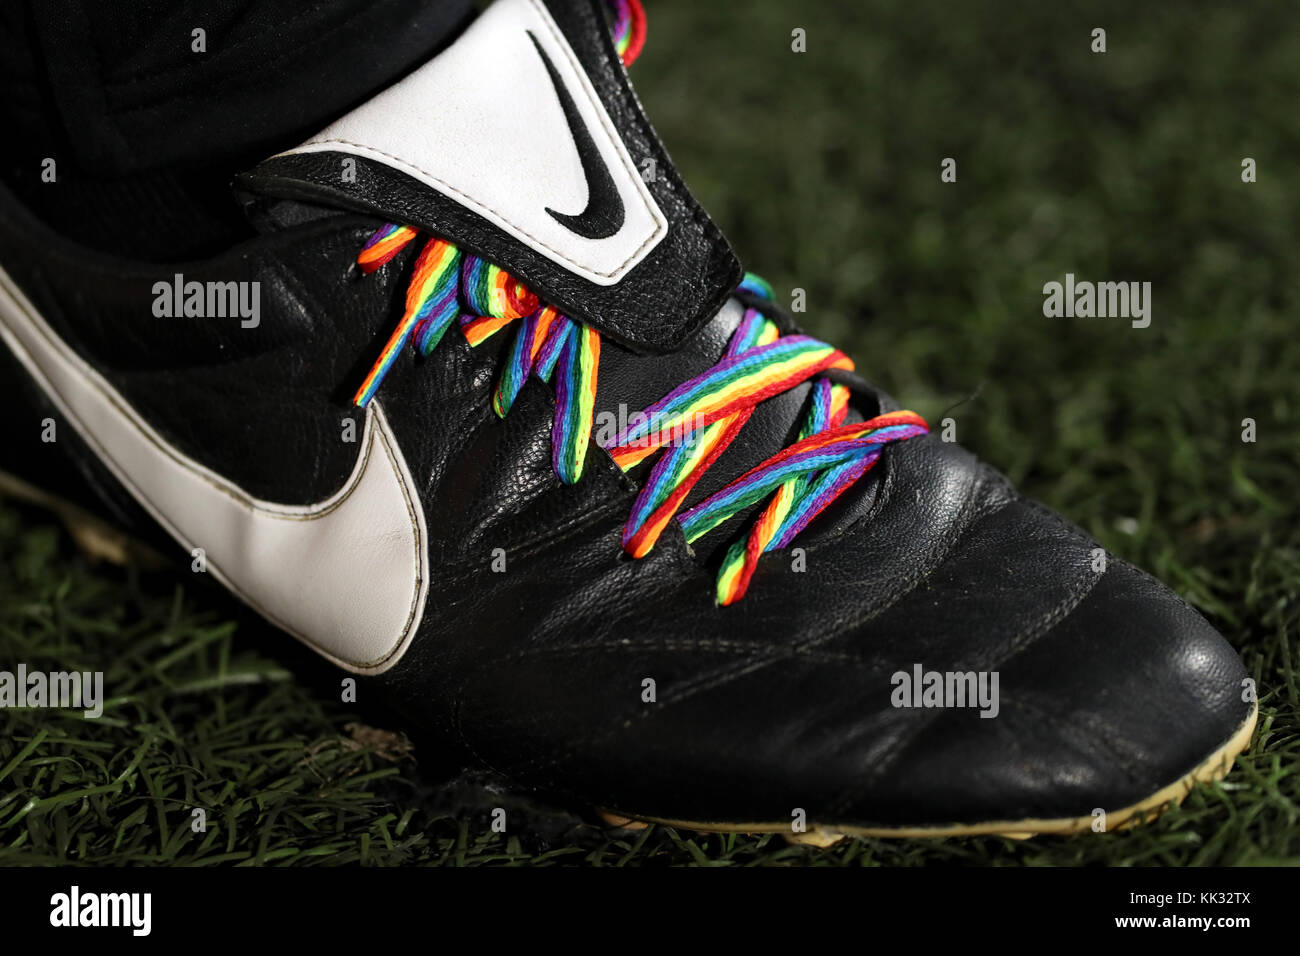 Regenbogen Schnürsenkel farbige auf der Marke Nike Fußballschuhe an der  Loftus Road, London Stockfotografie - Alamy